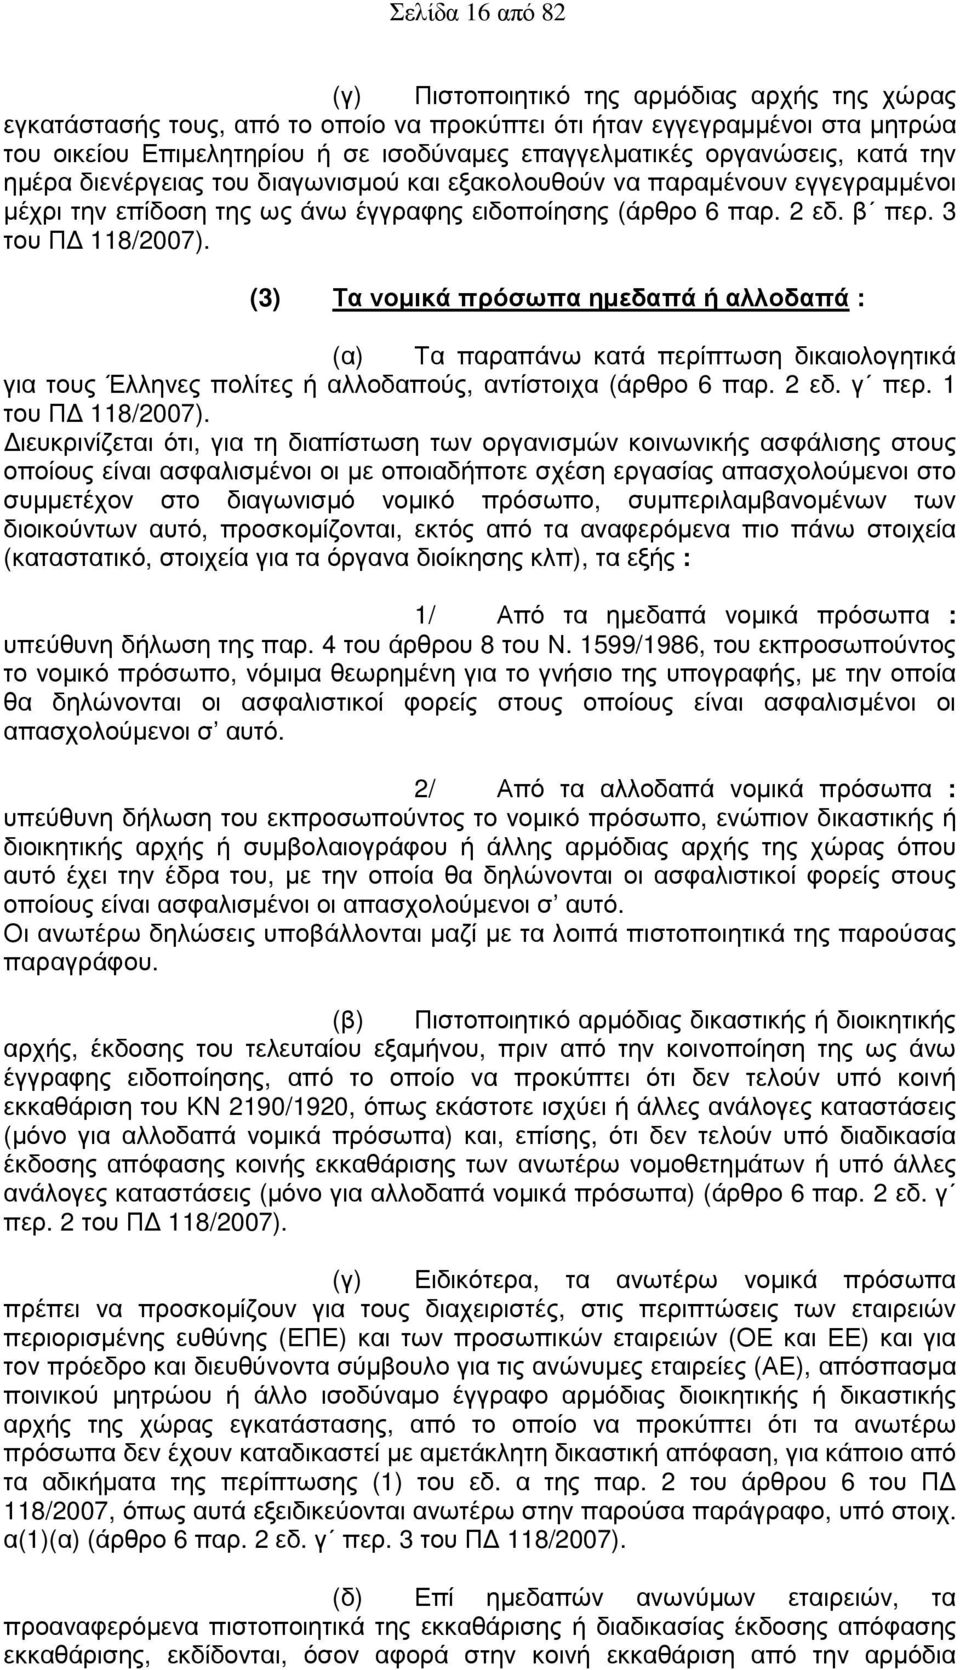 (3) Τα νοµικά πρόσωπα ηµεδαπά ή αλλοδαπά : (α) Τα παραπάνω κατά περίπτωση δικαιολογητικά για τους Έλληνες πολίτες ή αλλοδαπούς, αντίστοιχα (άρθρο 6 παρ. 2 εδ. γ περ. 1 του Π 118/2007).